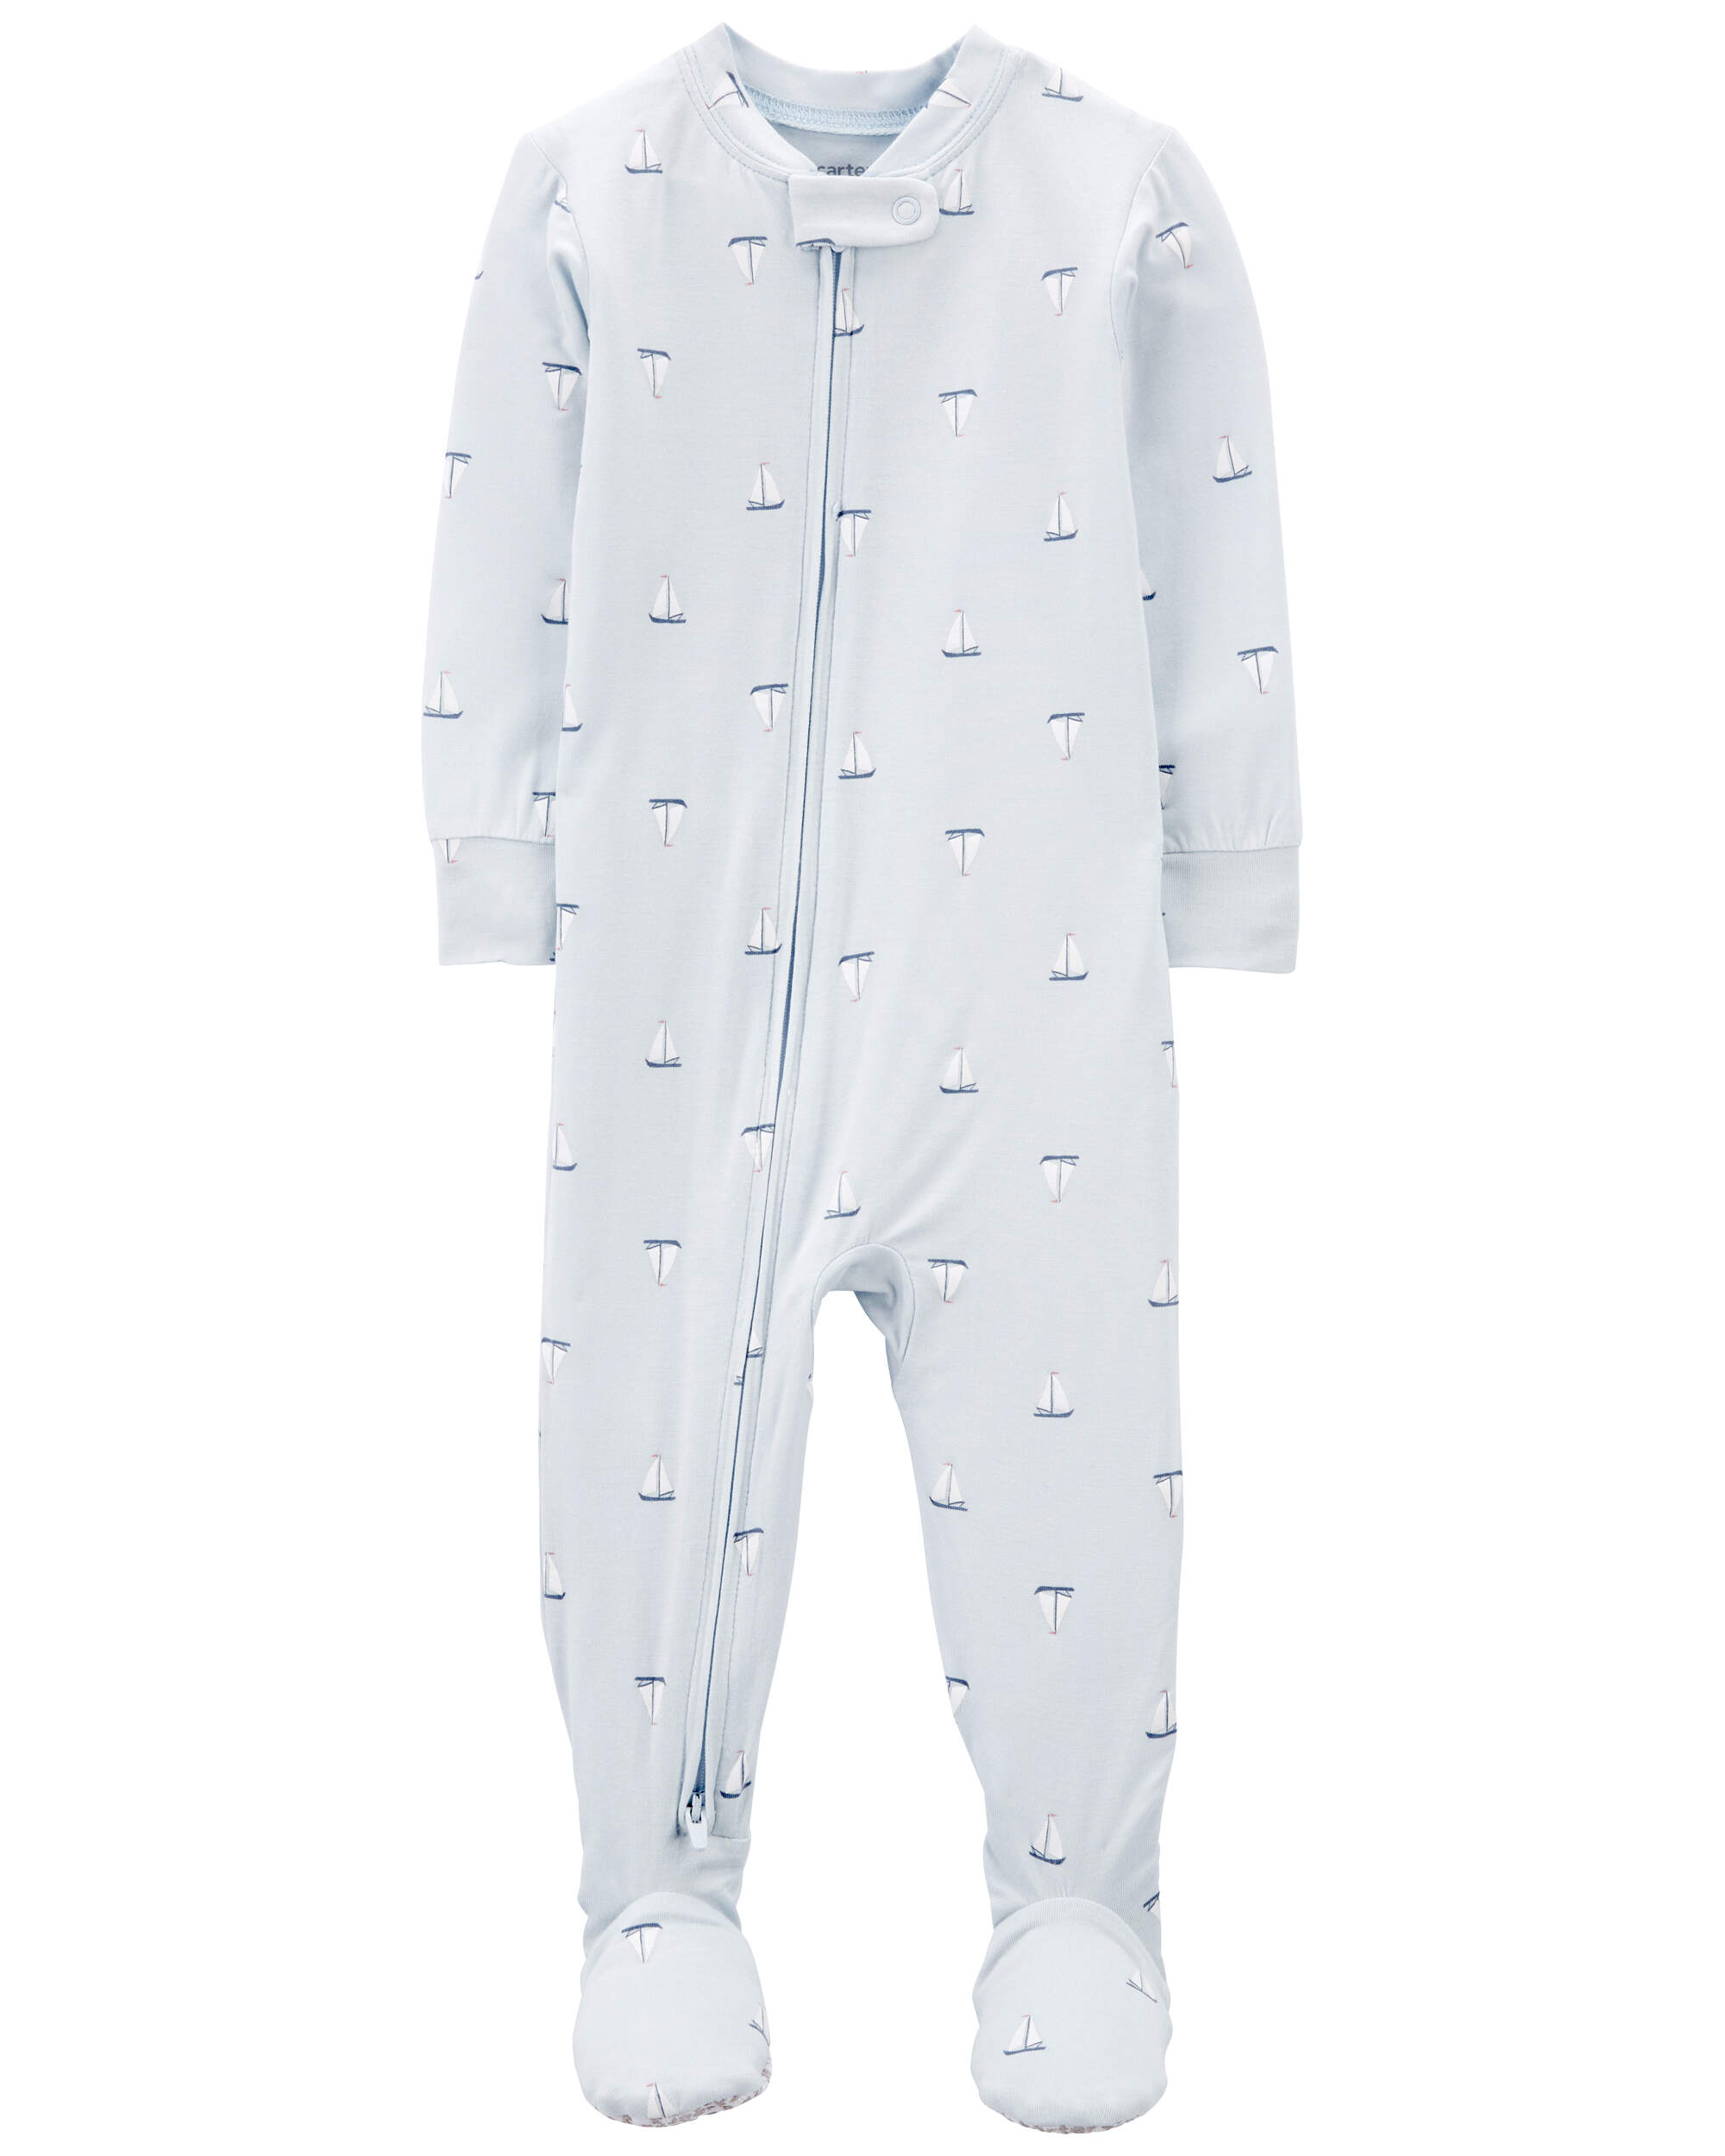 Toddler 1-Piece PurelySoft Footie Pyjamas